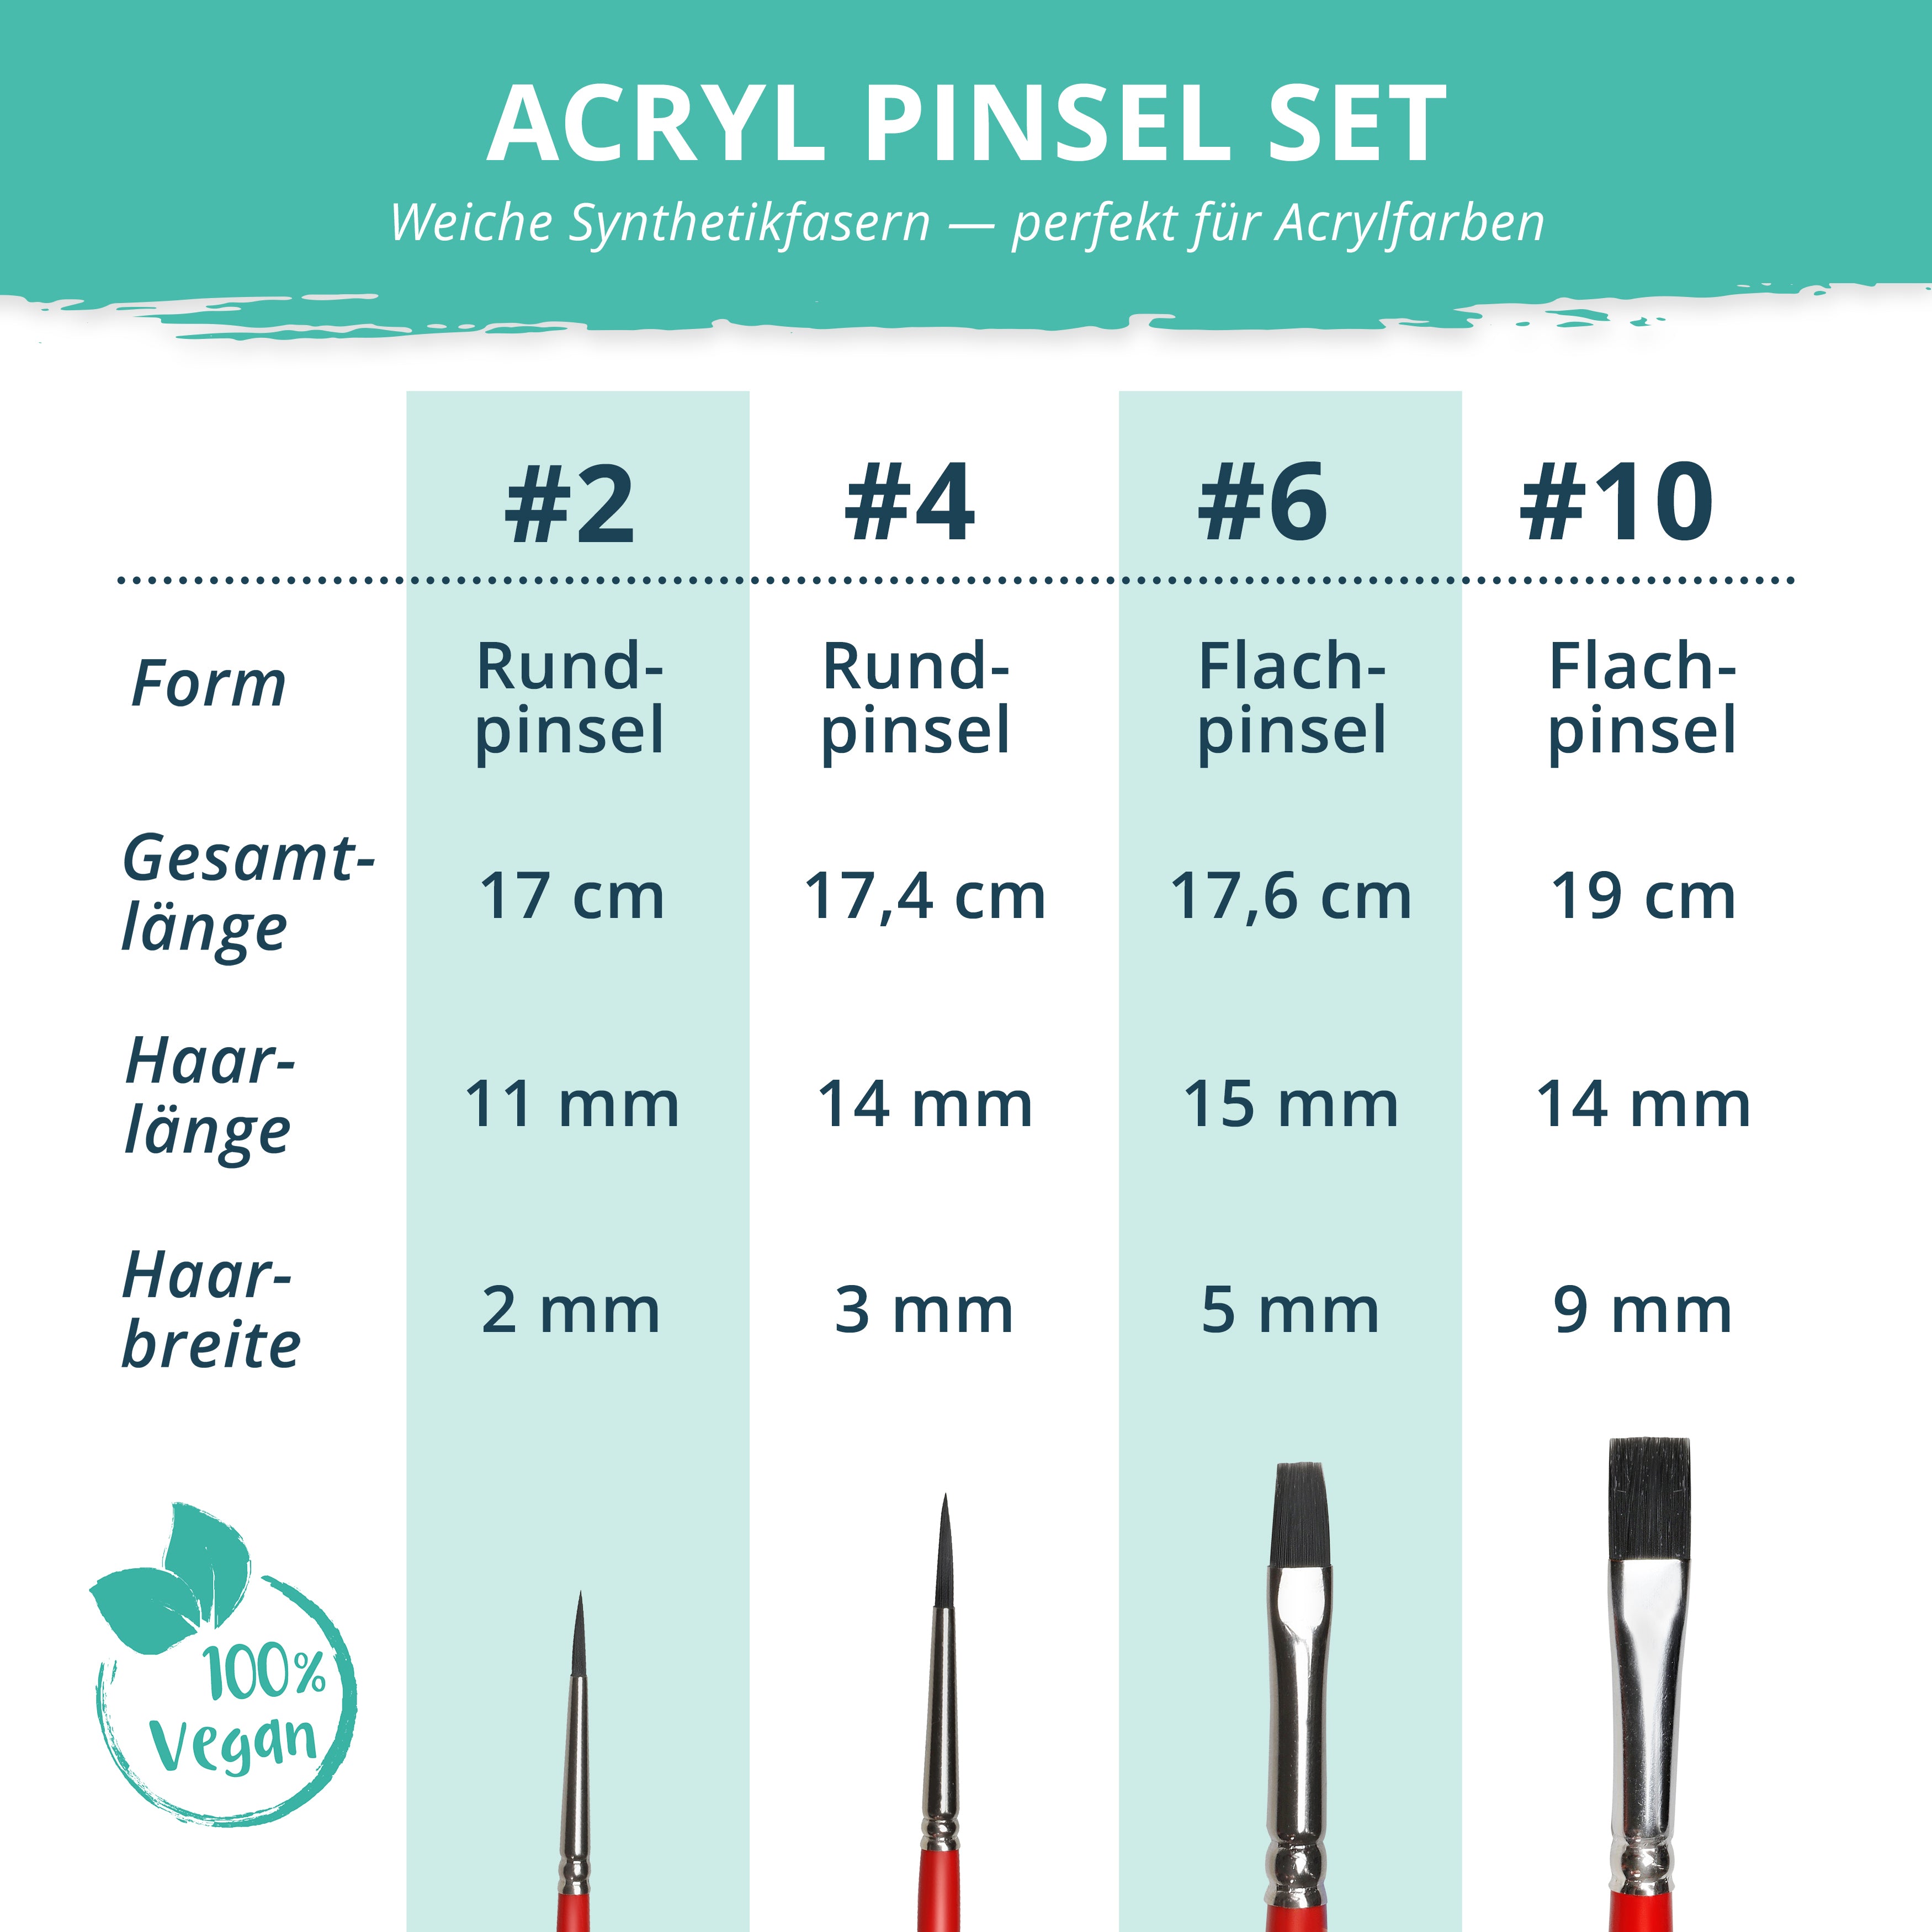 Acryl Pinsel Set I 4 hochwertige Pinsel in verschiedenen Größen | Handarbeit Made in Germany